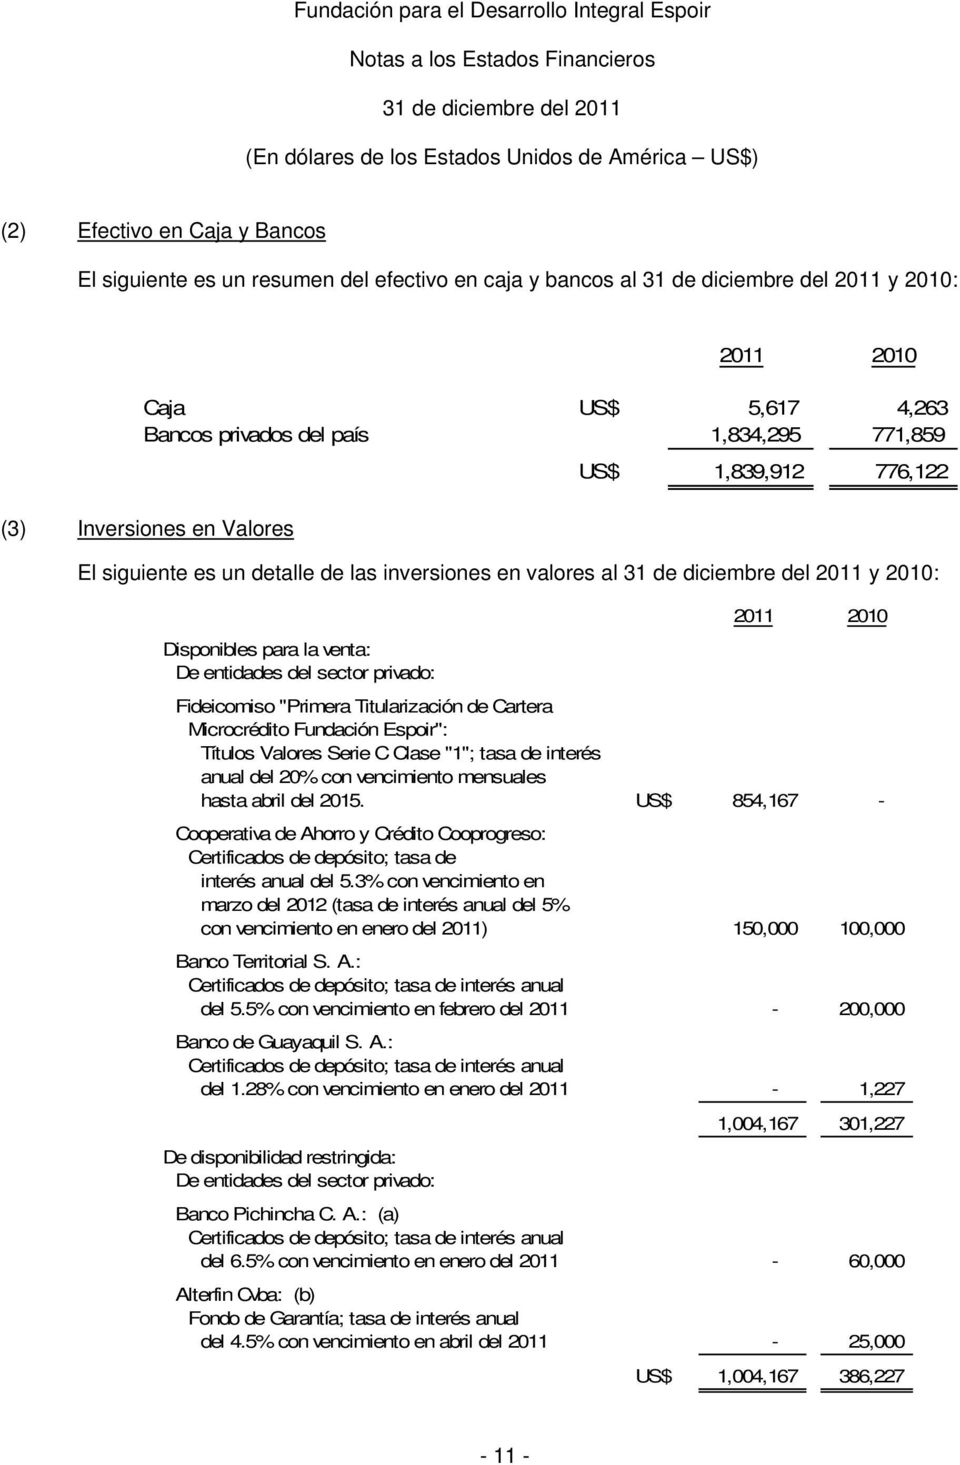 Cartera Microcrédito Fundación Espoir": Títulos Valores Serie C Clase "1"; tasa de interés anual del 20% con vencimiento mensuales hasta abril del 2015.